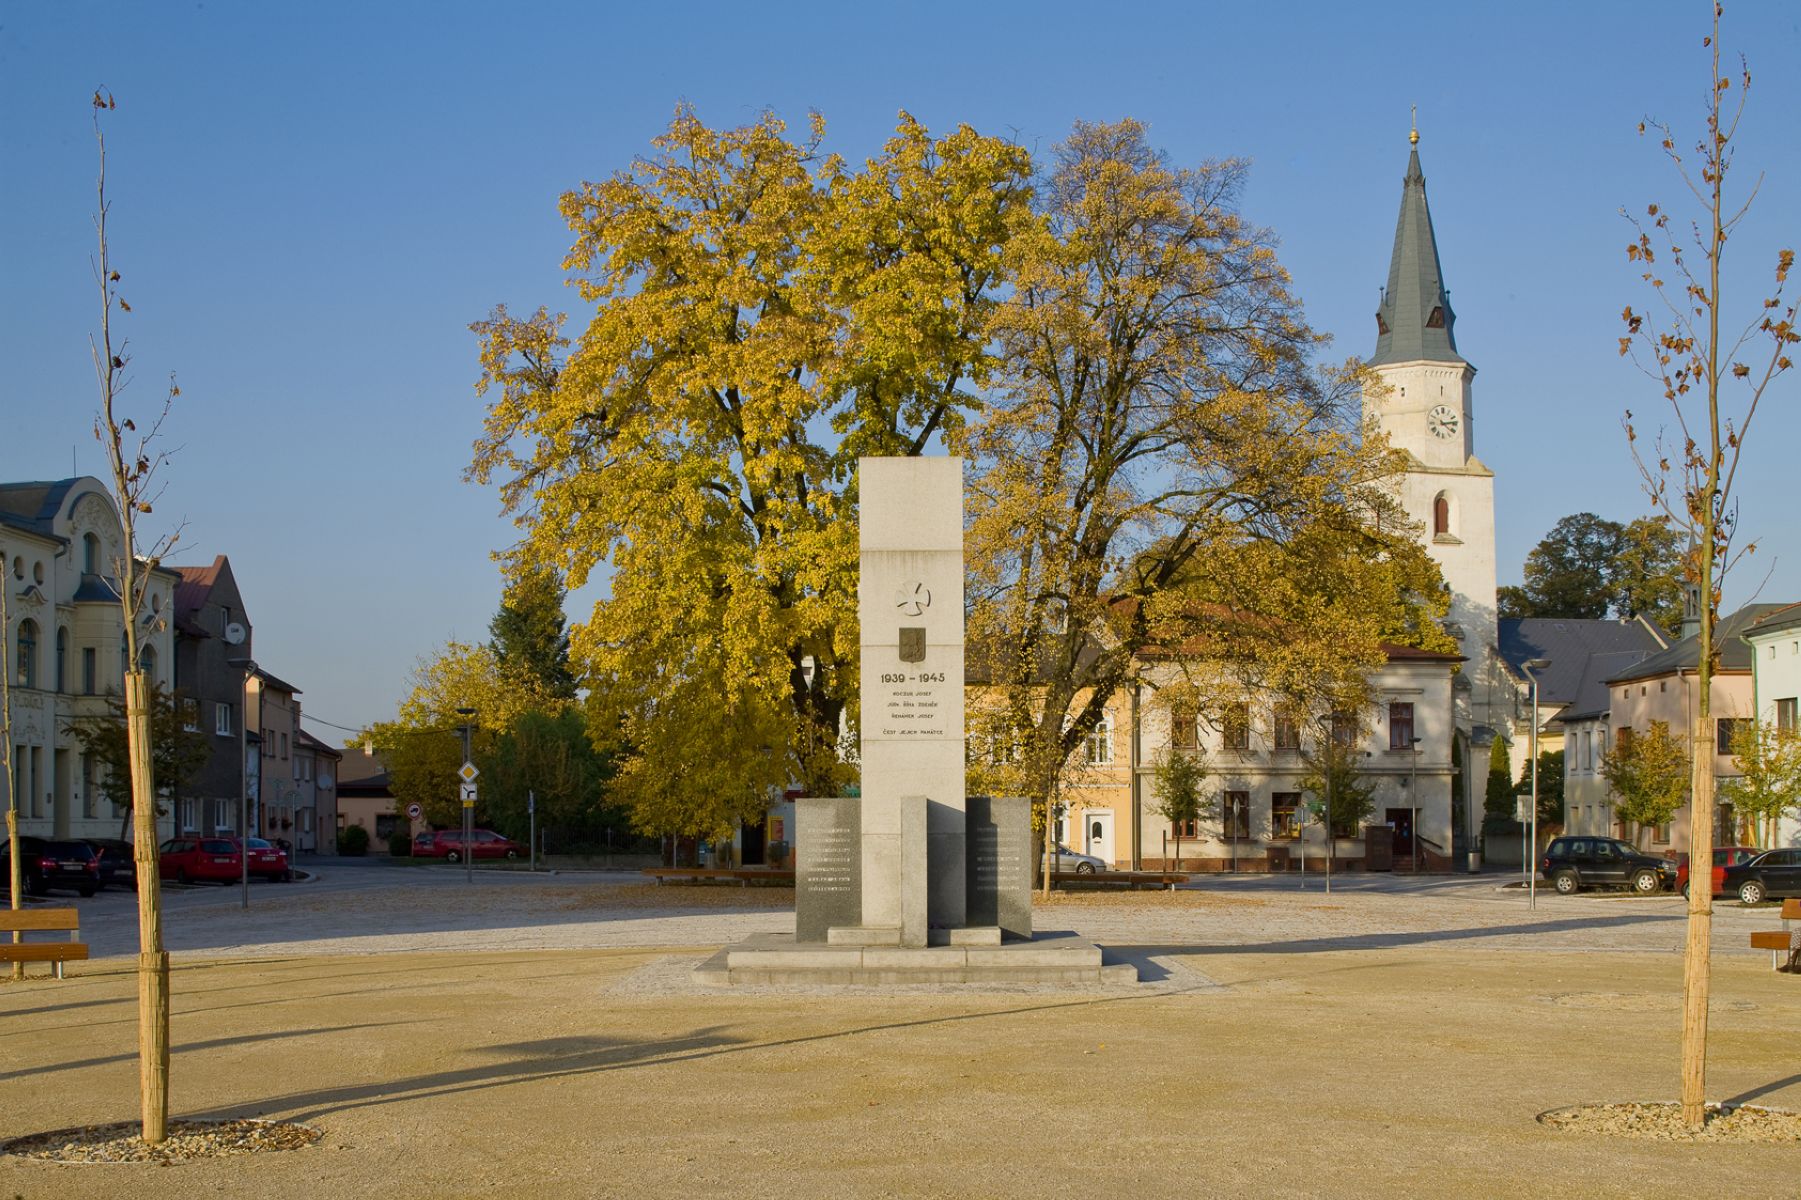 The square Náměstí Svobody in Starý Bohumín